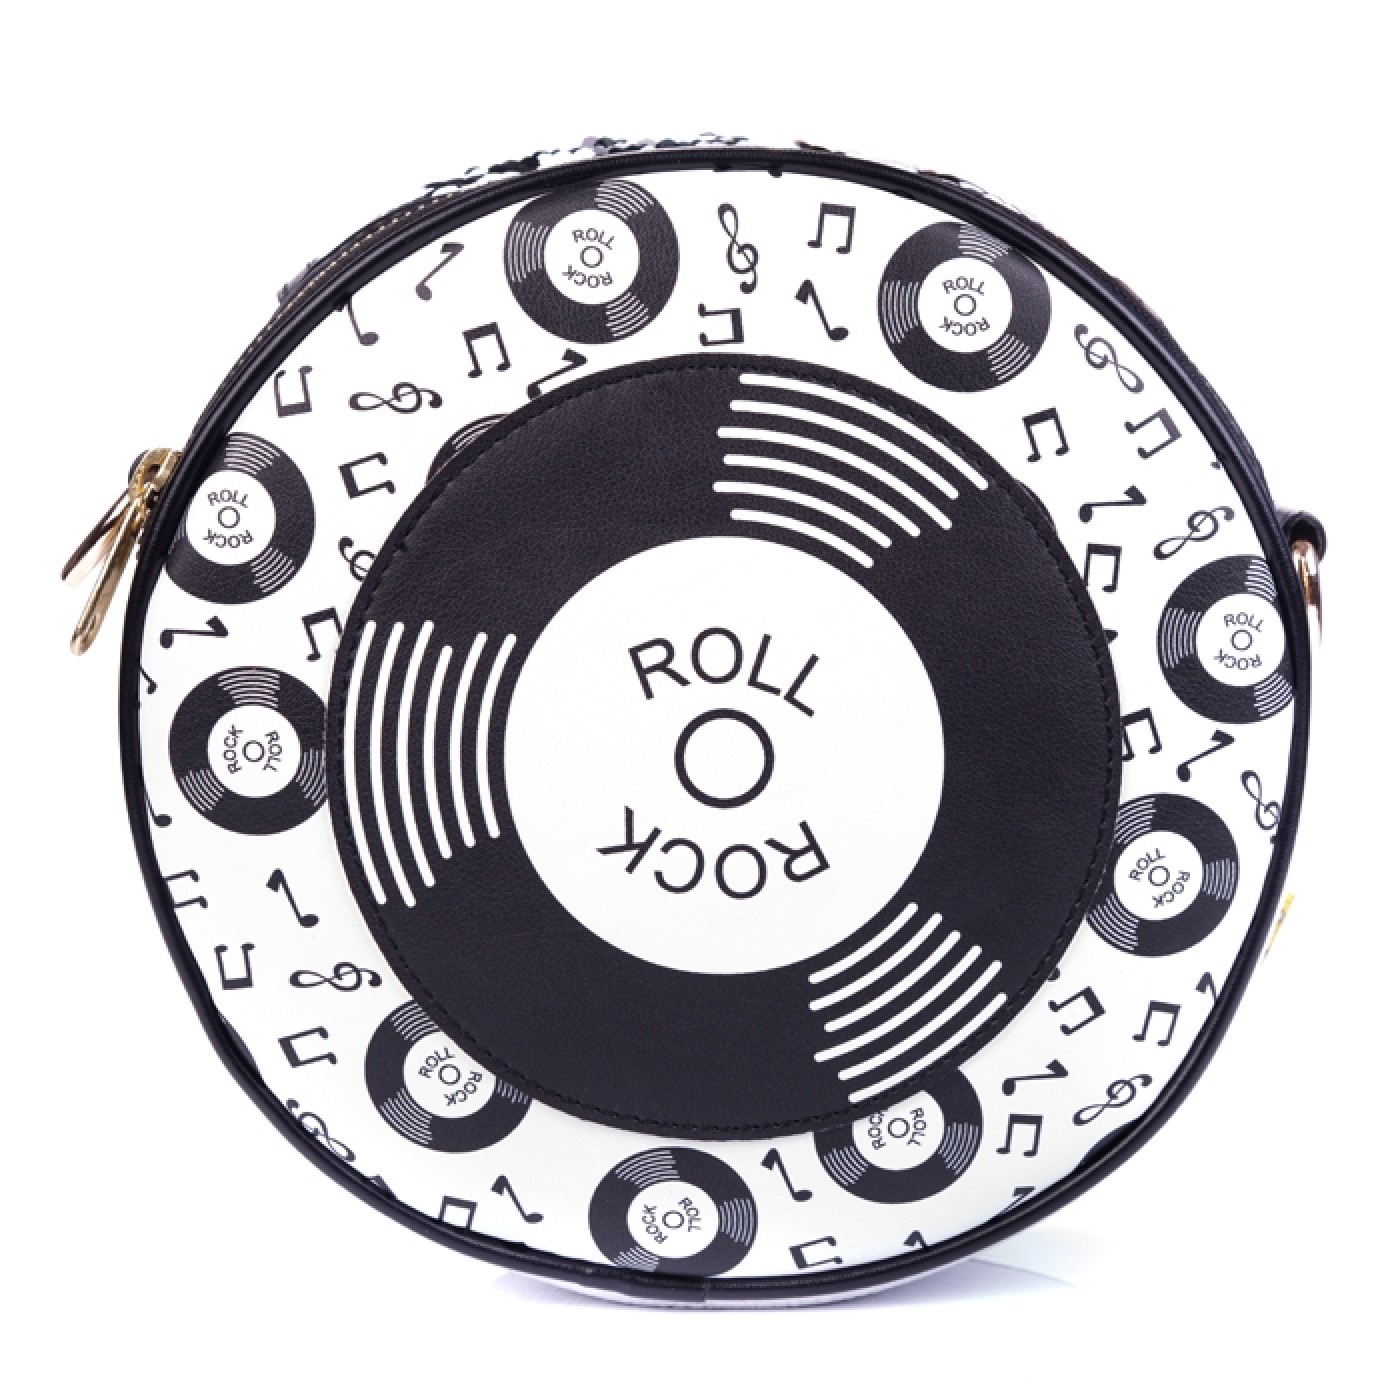 Rocko Roller Bag (white)